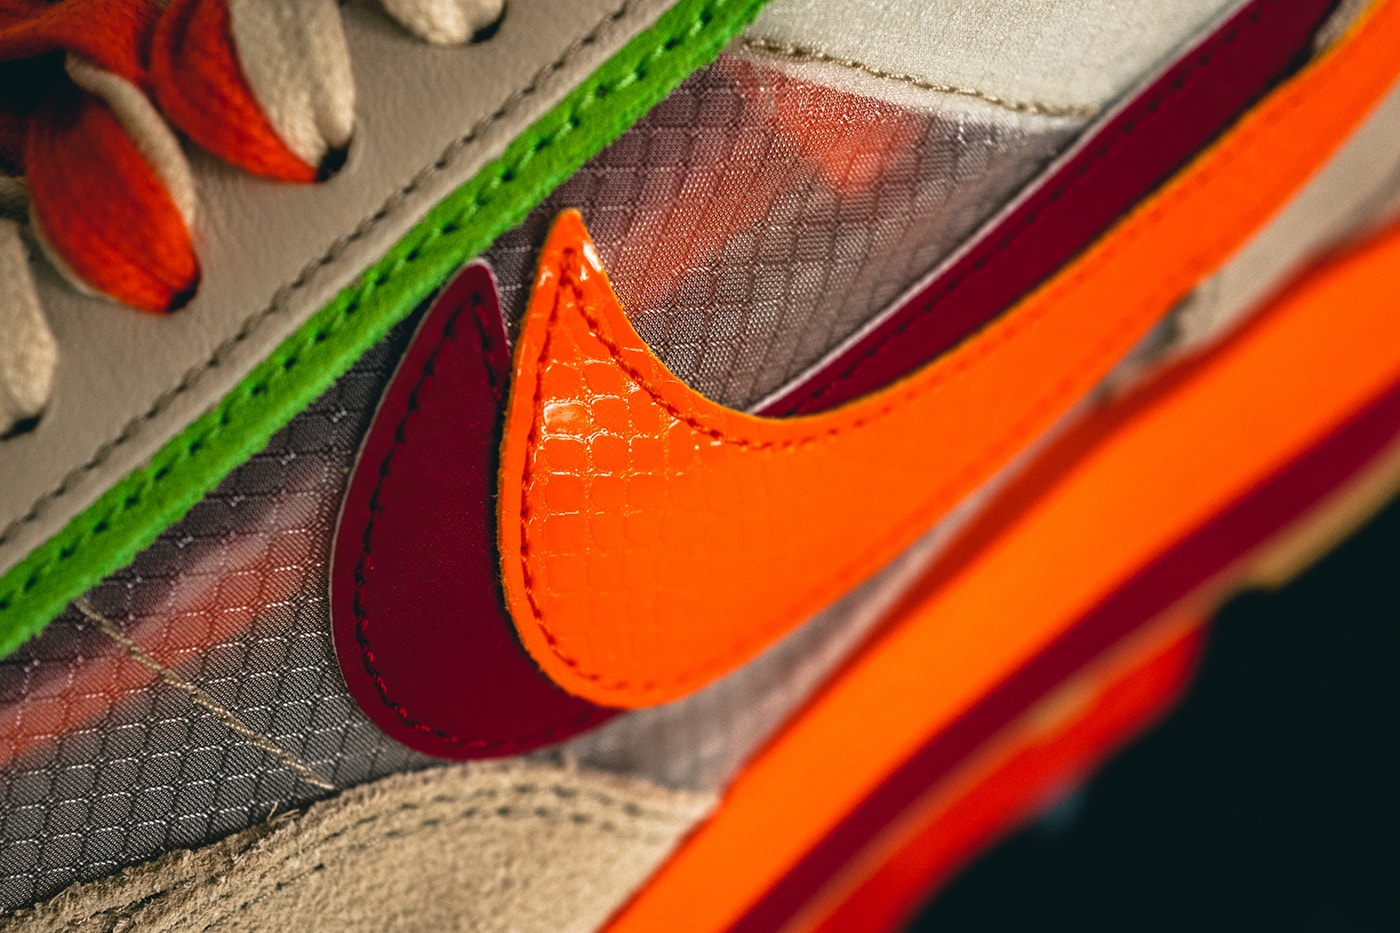 独家近赏 CLOT x sacai x Nike LDWaffle「Orange Blaze」最新联乘鞋款